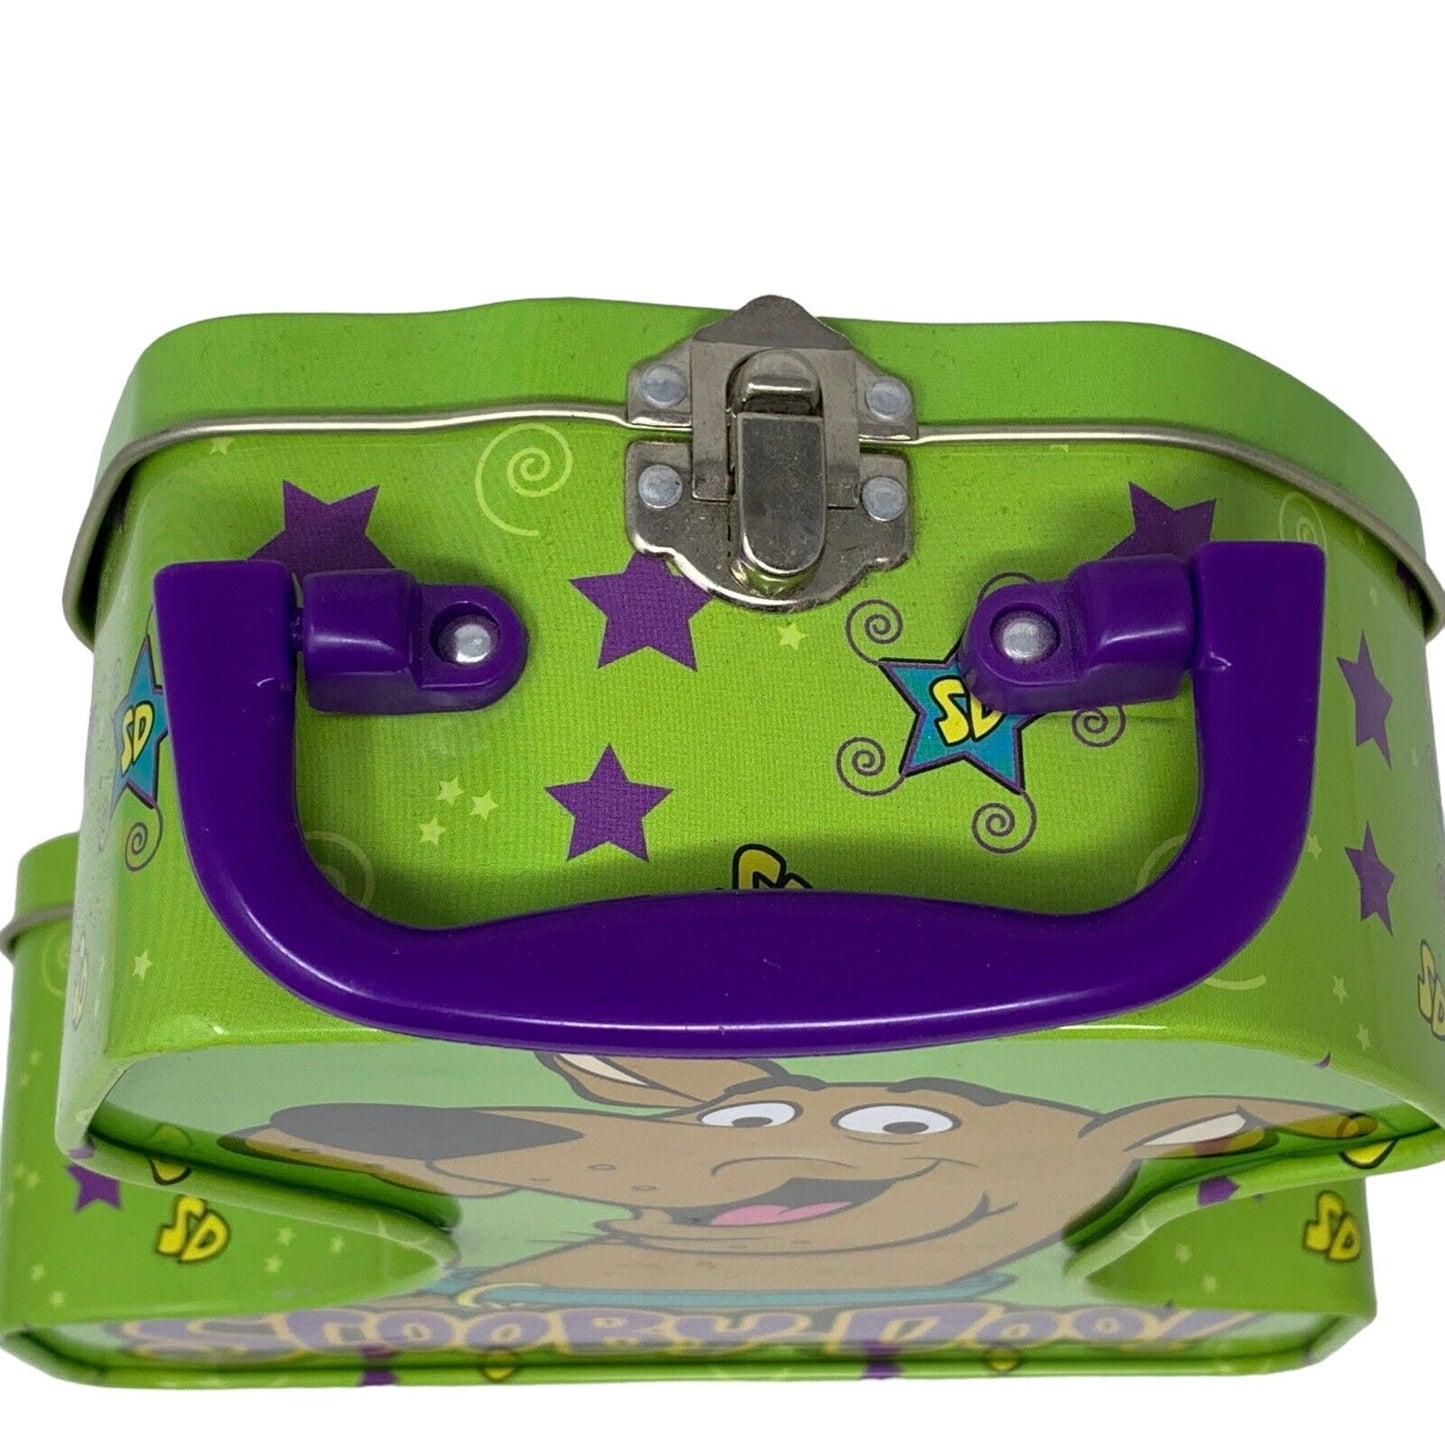 Scooby Doo Vintage Y2Ks Handled Hinged Tin Metal Box 2003 Green Lunchbox Cartoon